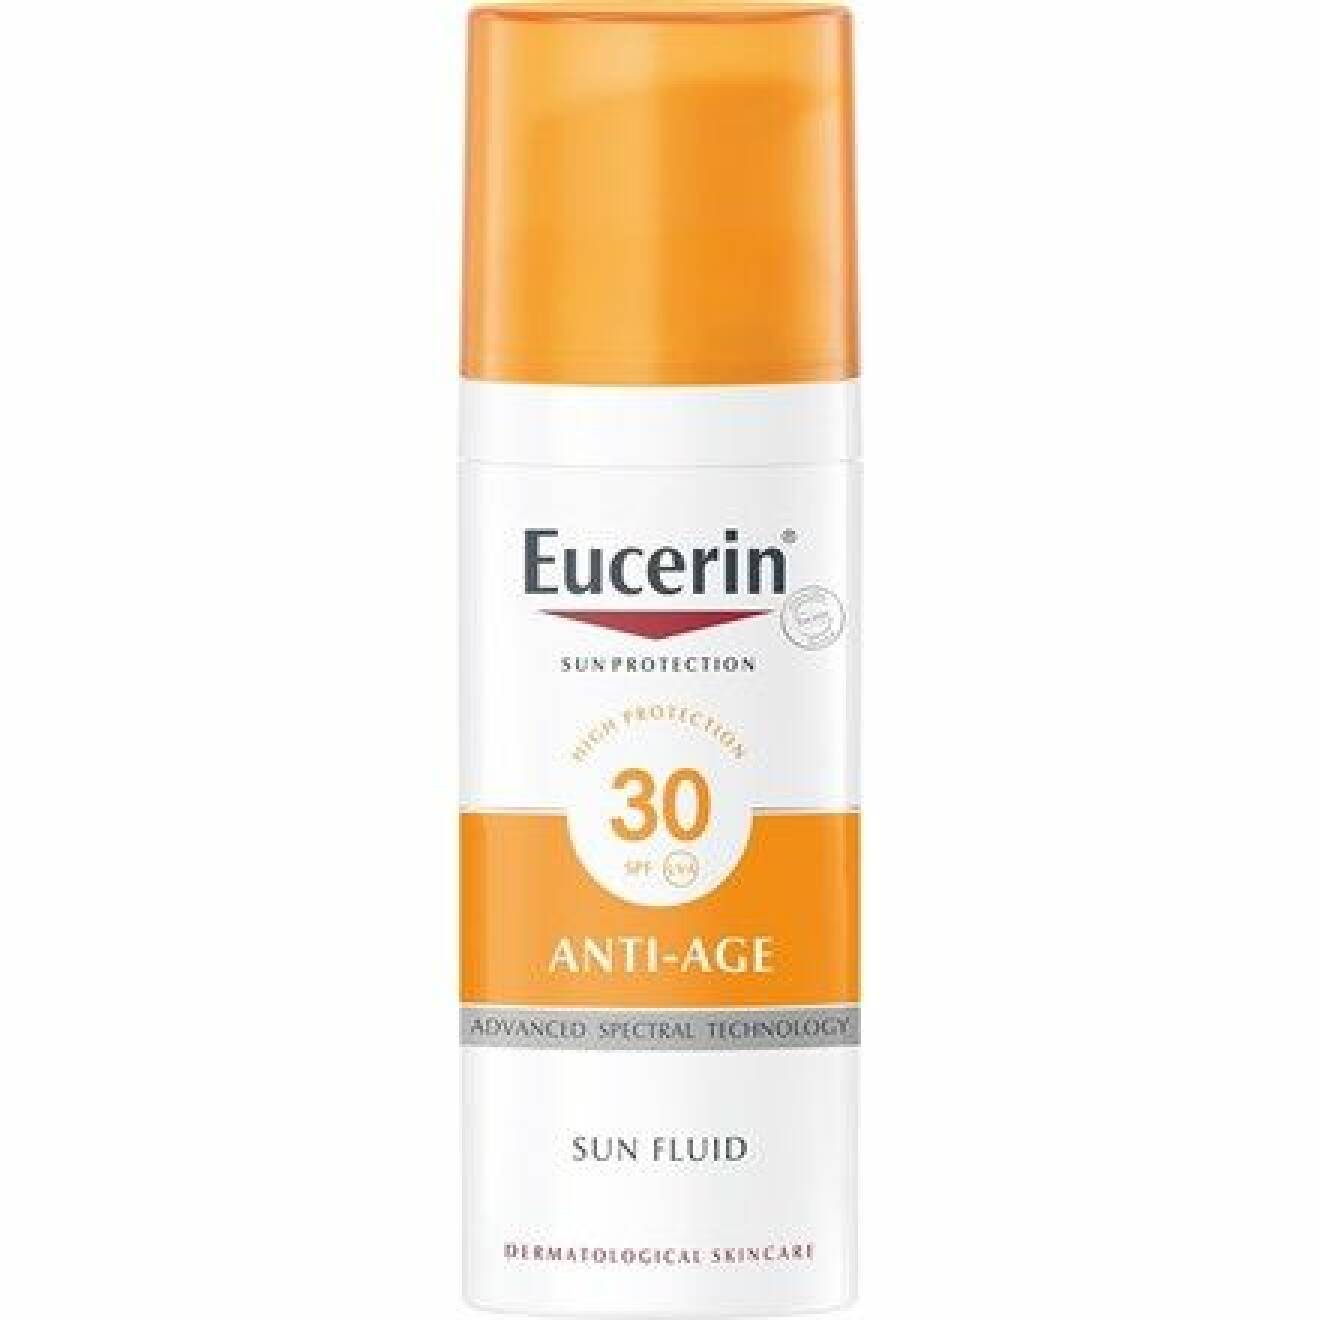 Eucerin Anti Age sun fluid spf 30. 